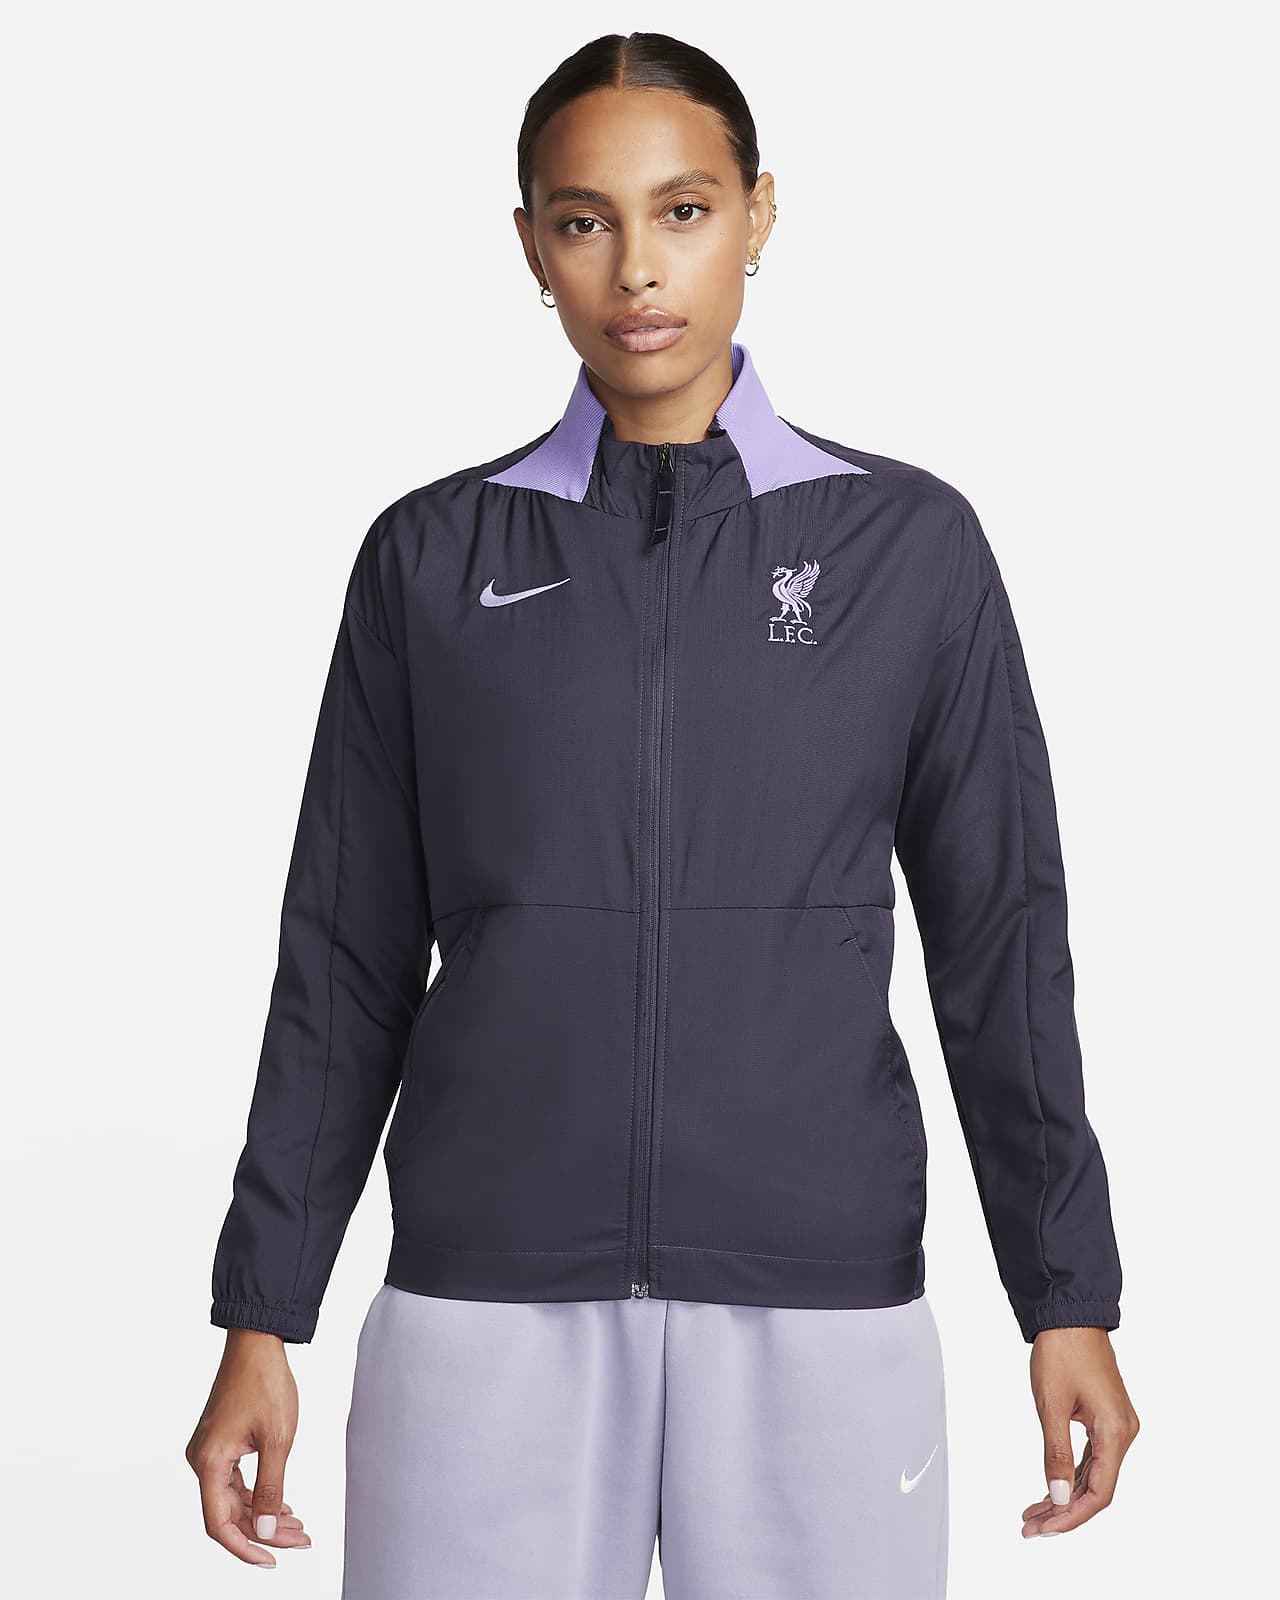 Liverpool F.C. Third Women's Nike Dri-FIT Football Jacket